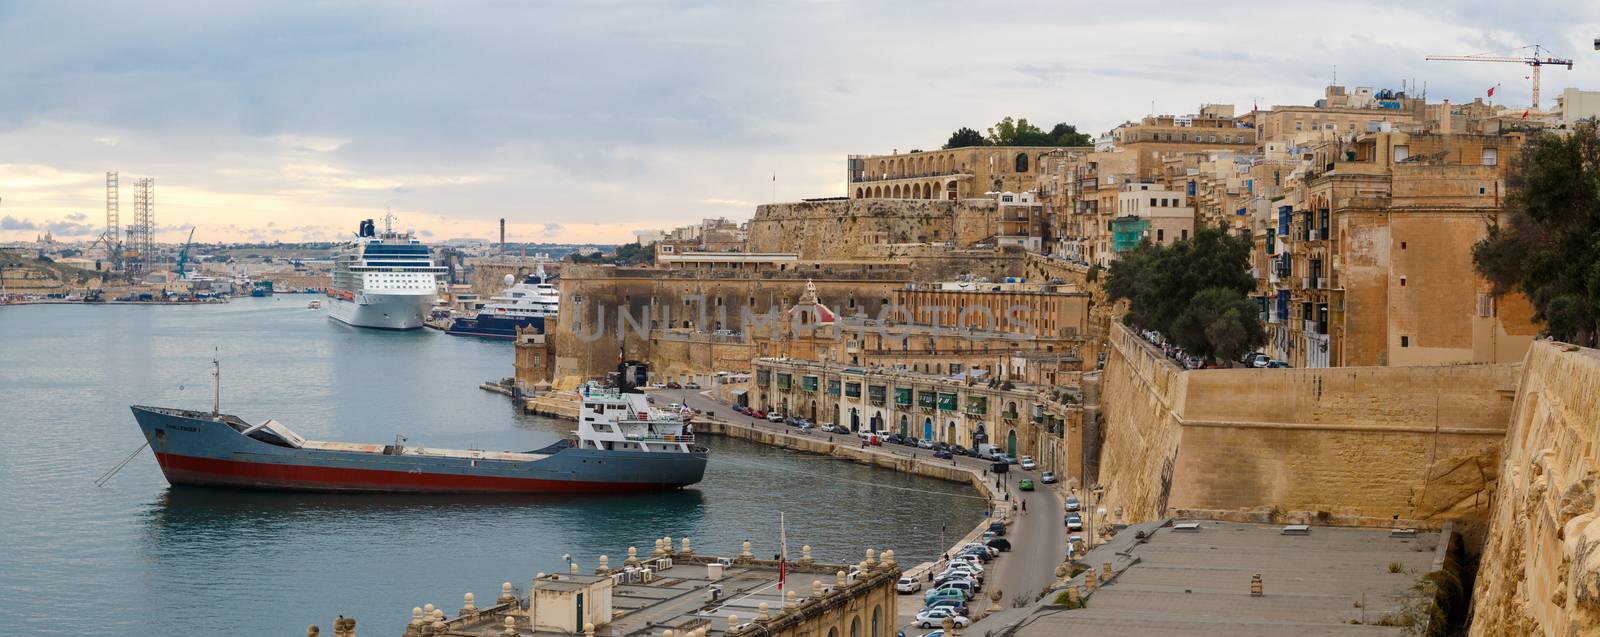 Valletta General View by niglaynike